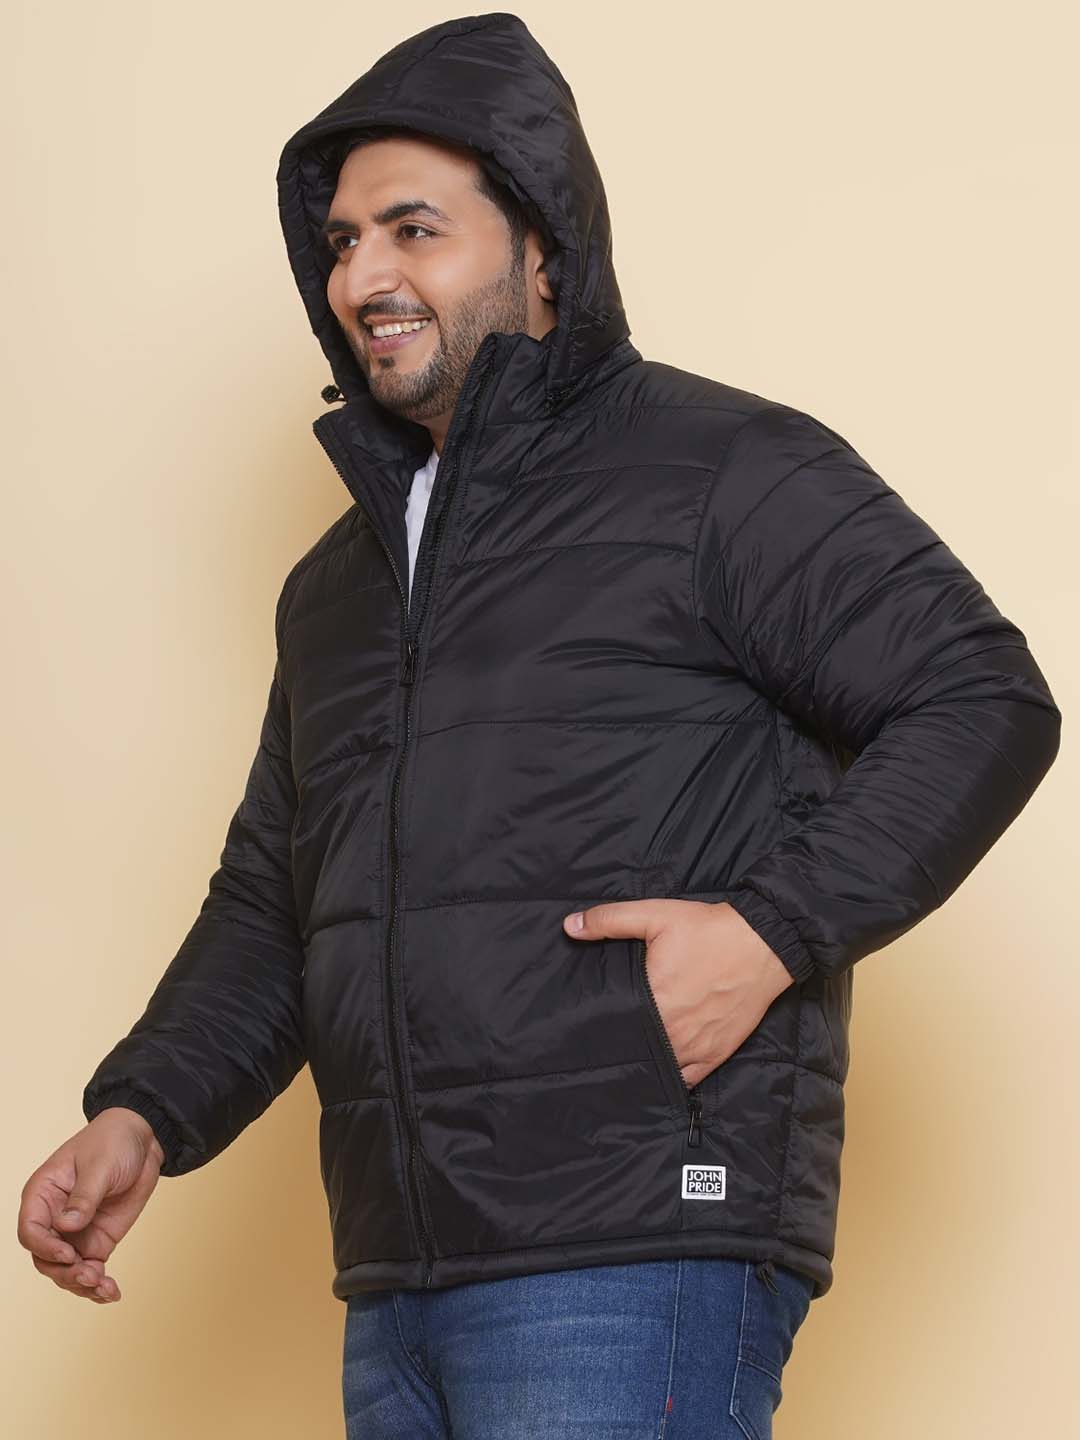 winterwear/jackets/JPJKT73084A/jpjkt73084a-4.jpg